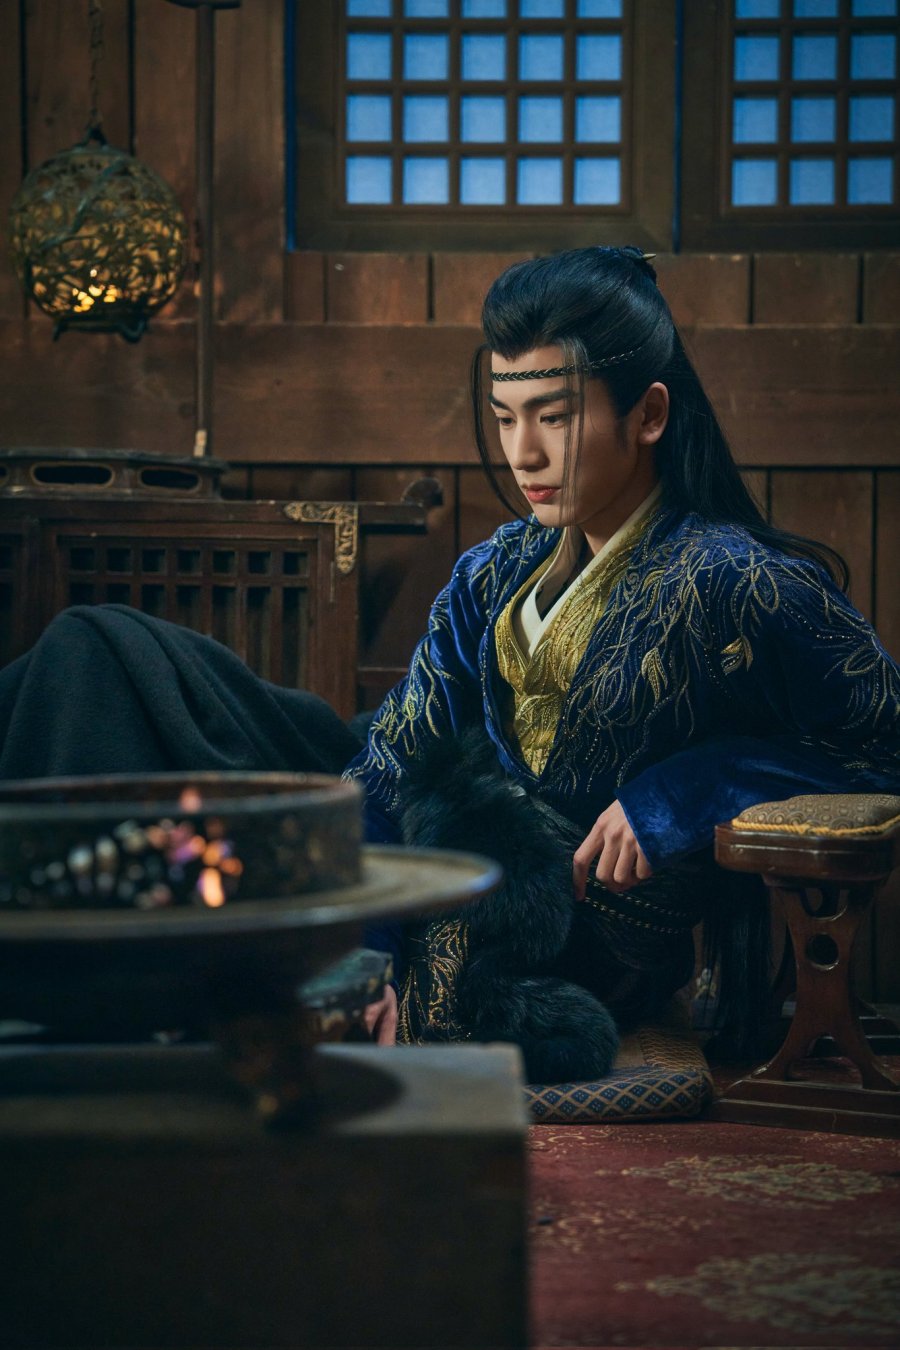 กงจื่ออวี่ (Gong Zi Yu) รับบทโดย จางหลิงเฮ่อ (Zhang  Ling He)